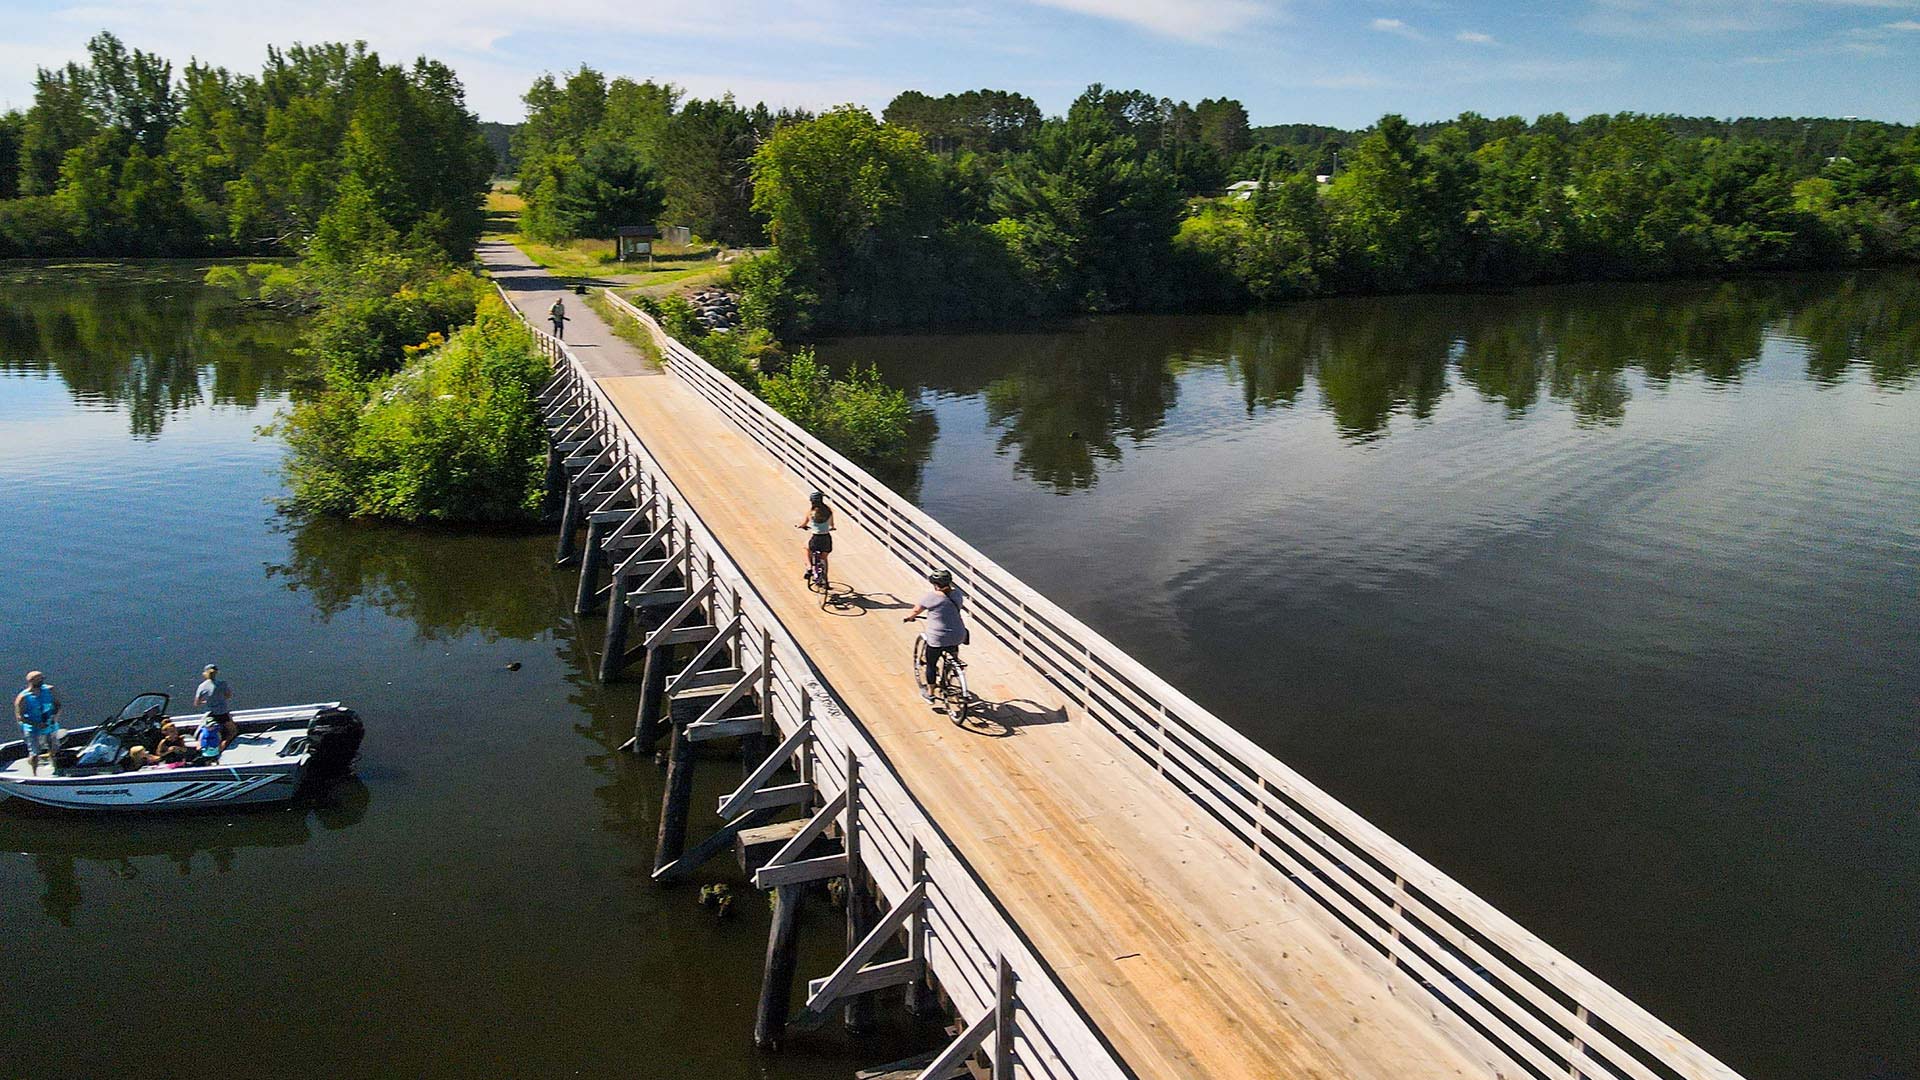 Find outdoor fun in Oneida County | Bike riders on Trestle Bridge over water